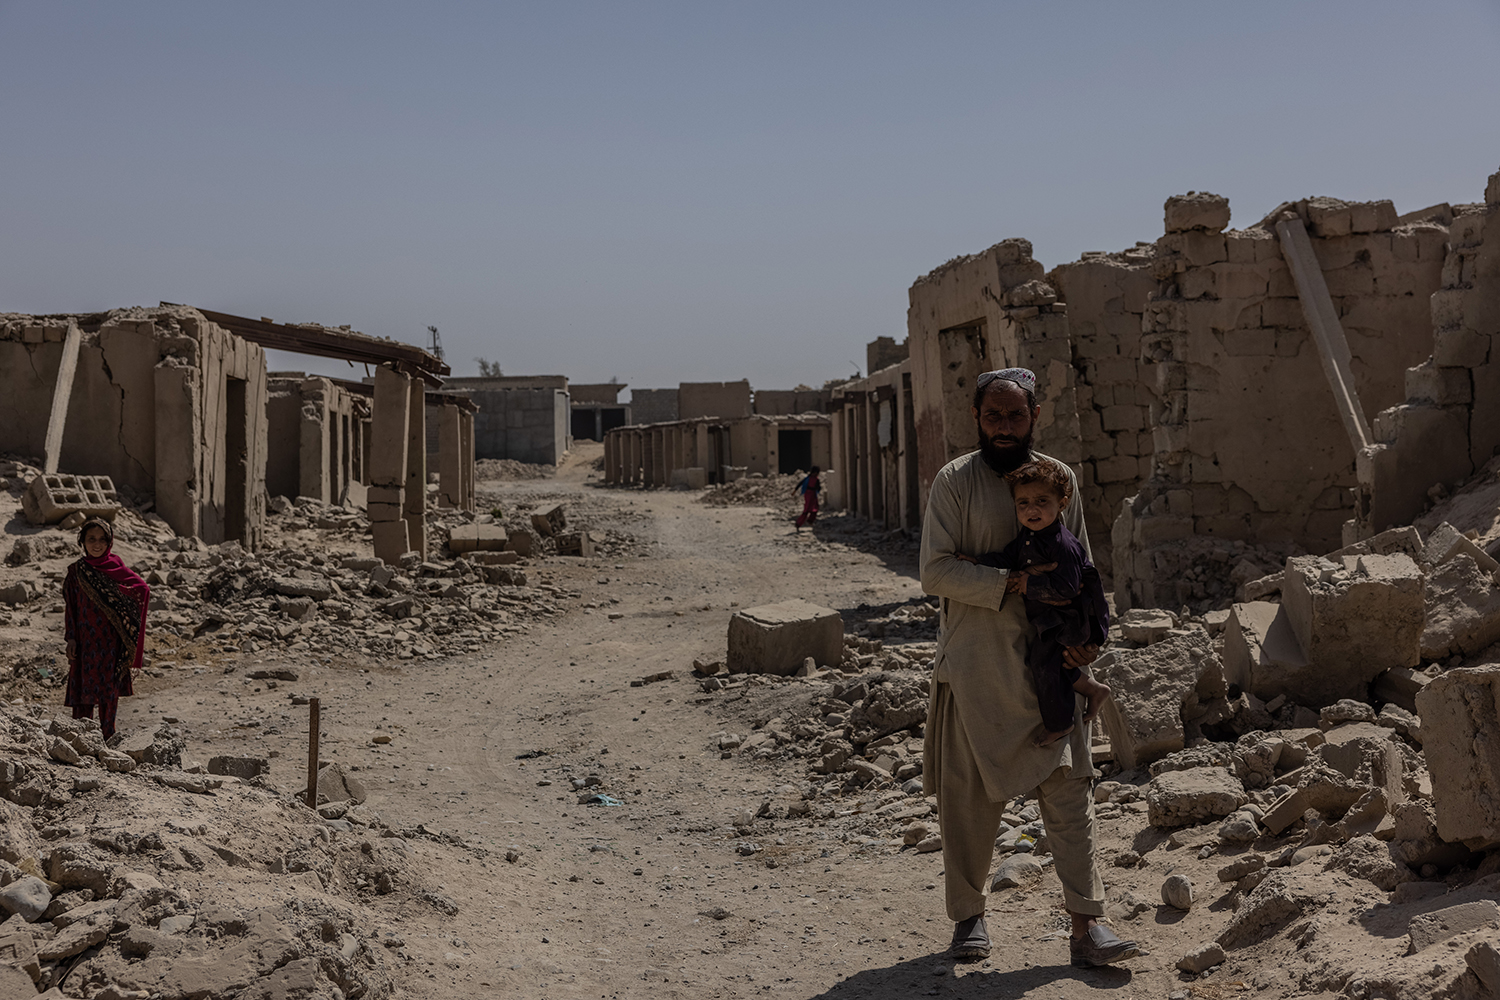 Los residentes se encuentran entre los escombros en Sangin, provincia de Helmand, tras los combates entre los talibanes y las fuerzas británicas.